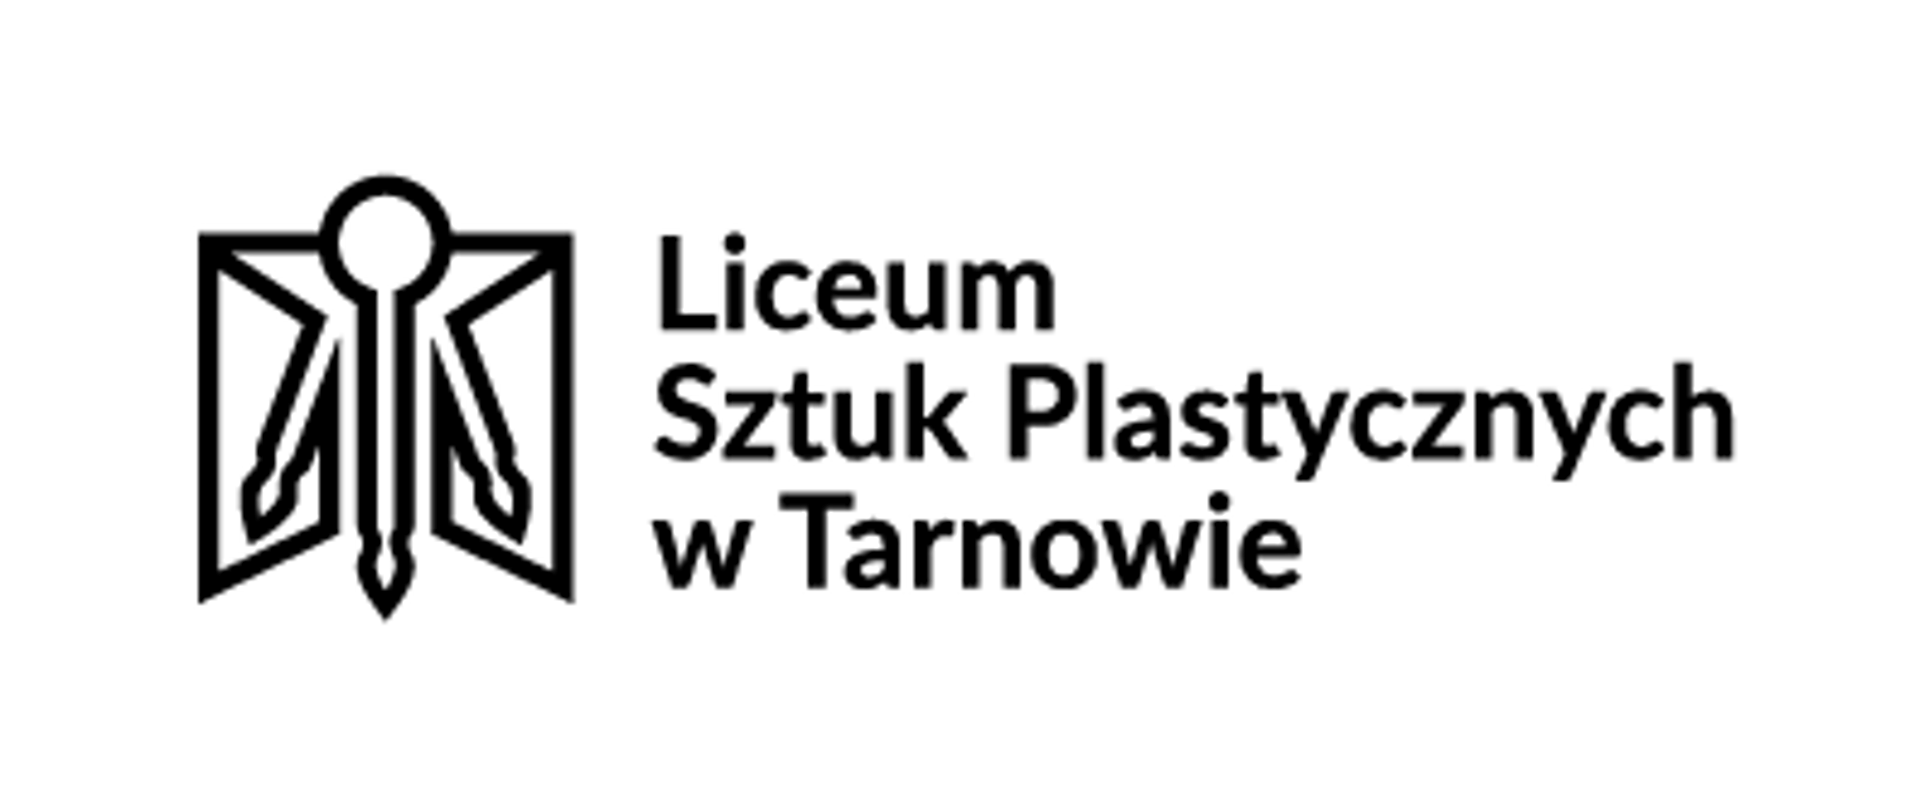 grafika przedstawia po lewej stronie czarny symbol, którego forma stanowi połączenie otwartych skrzydeł okiennych i trzech pędzli malarskich, po prawej stronie czarny napis Liceum Sztuk Plastycznych w Tarnowie